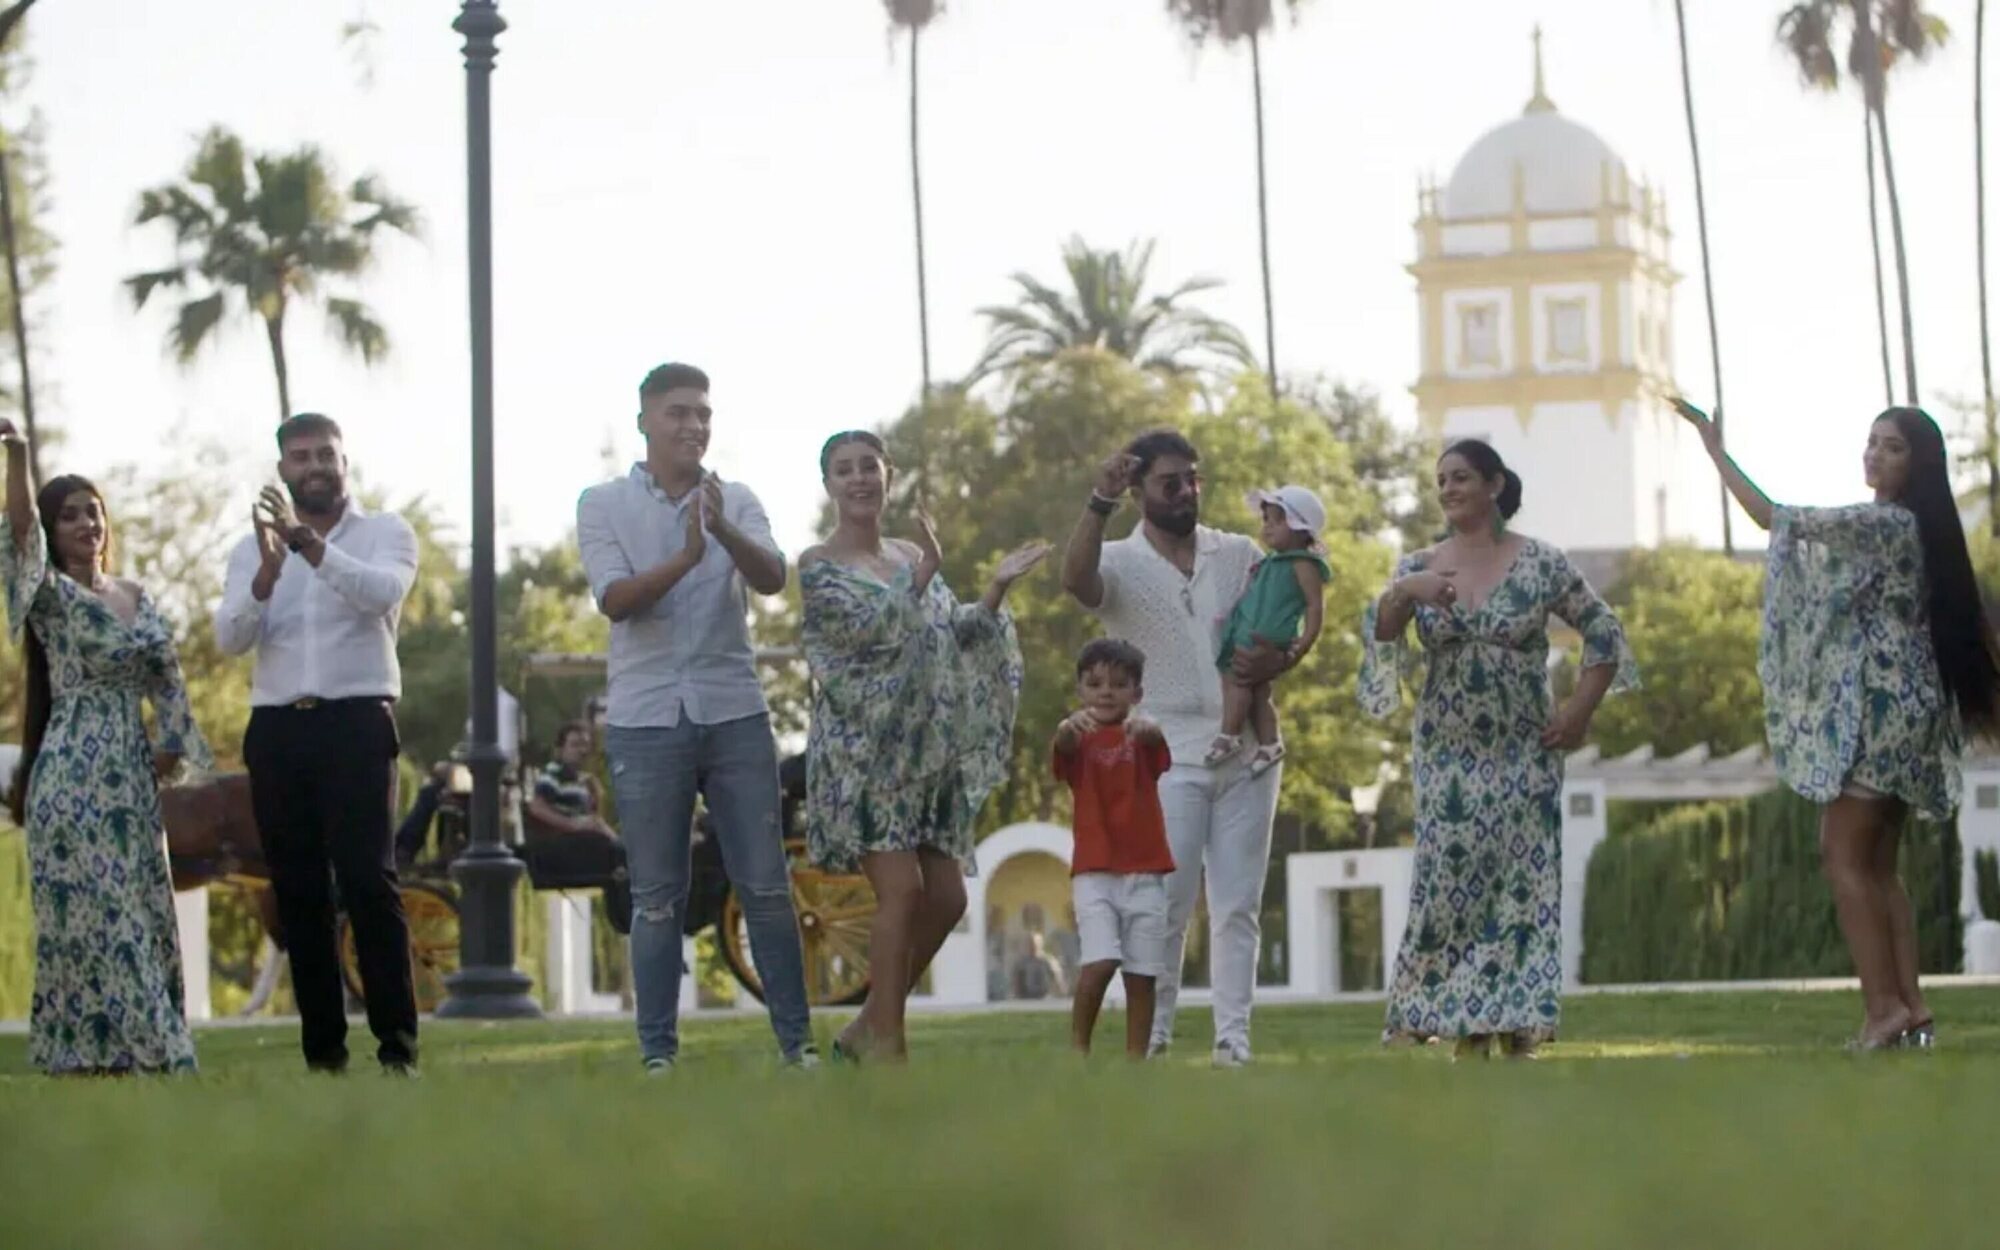 Cuatro prepara 'Mi gran bautizo Gipsy', un spin-off de 'Los Gipsy Kings' con los Jiménez